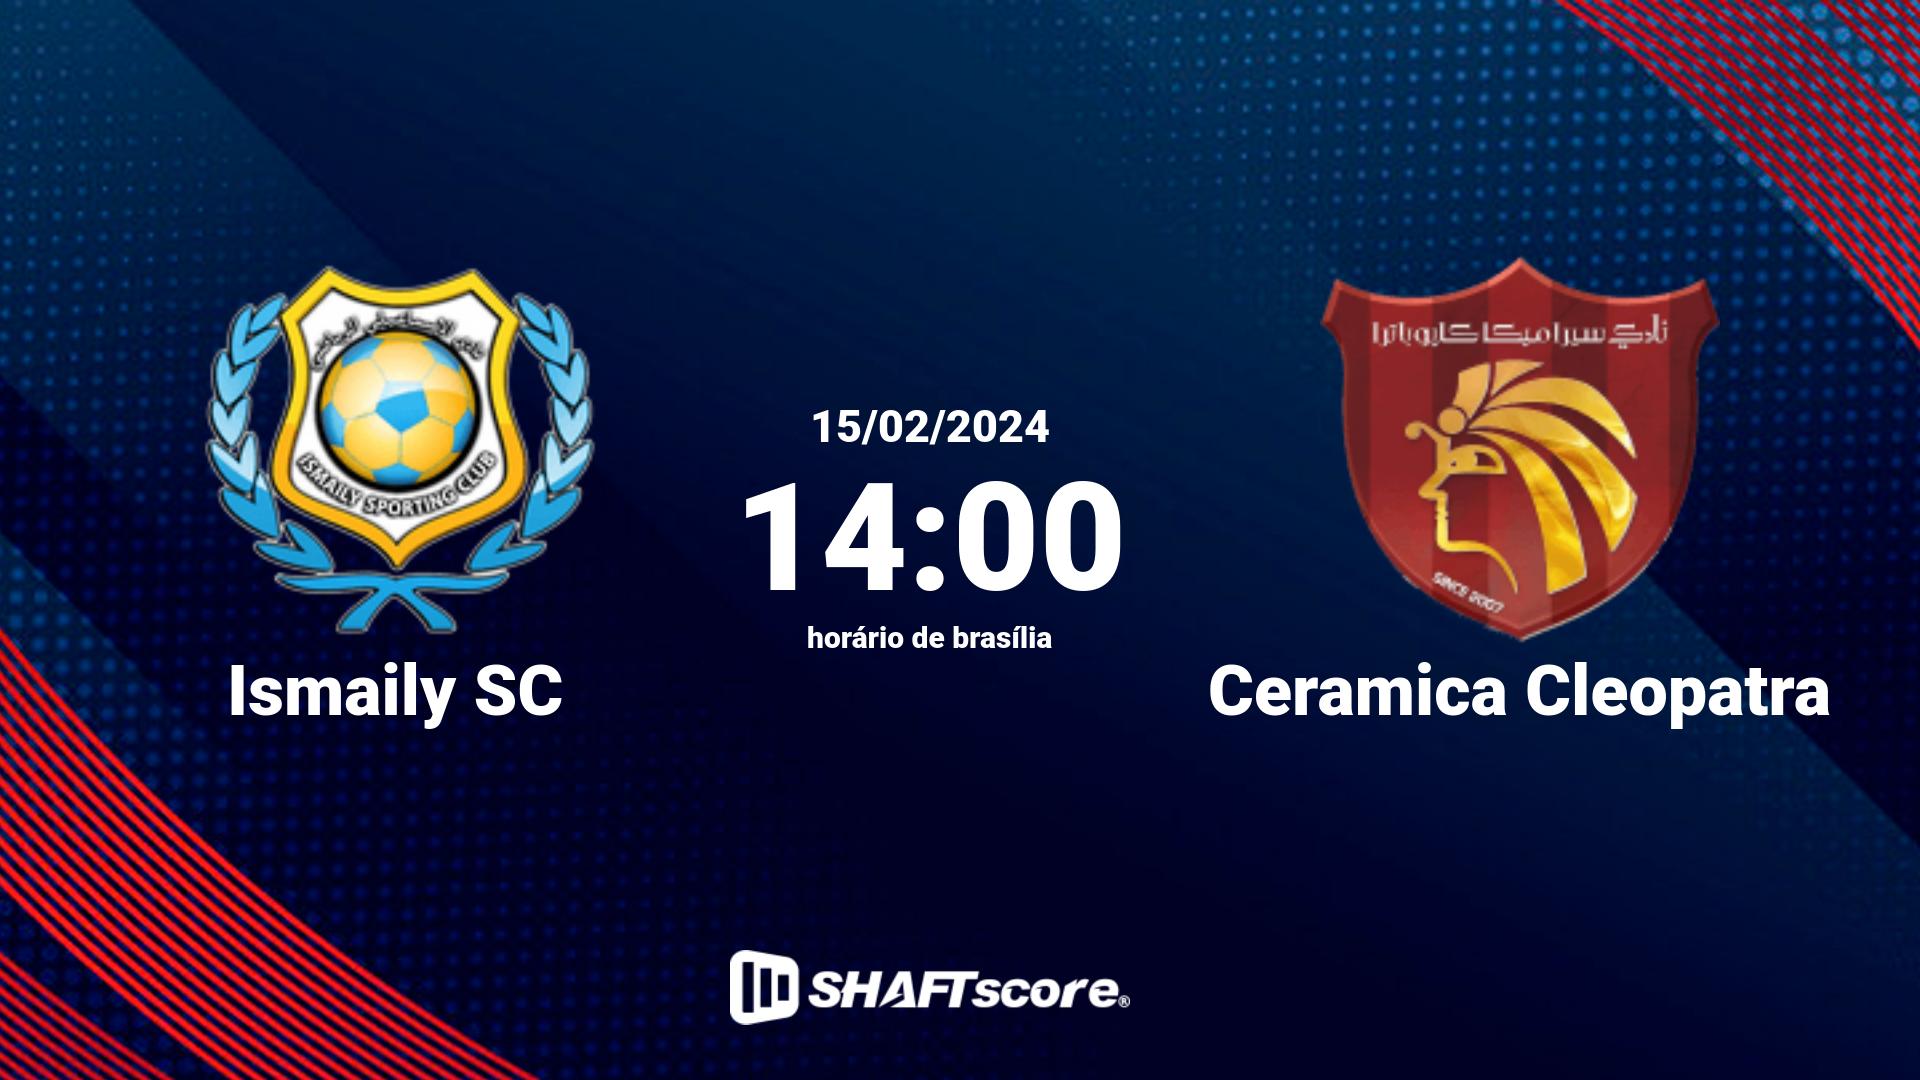 Estatísticas do jogo Ismaily SC vs Ceramica Cleopatra 15.02 14:00